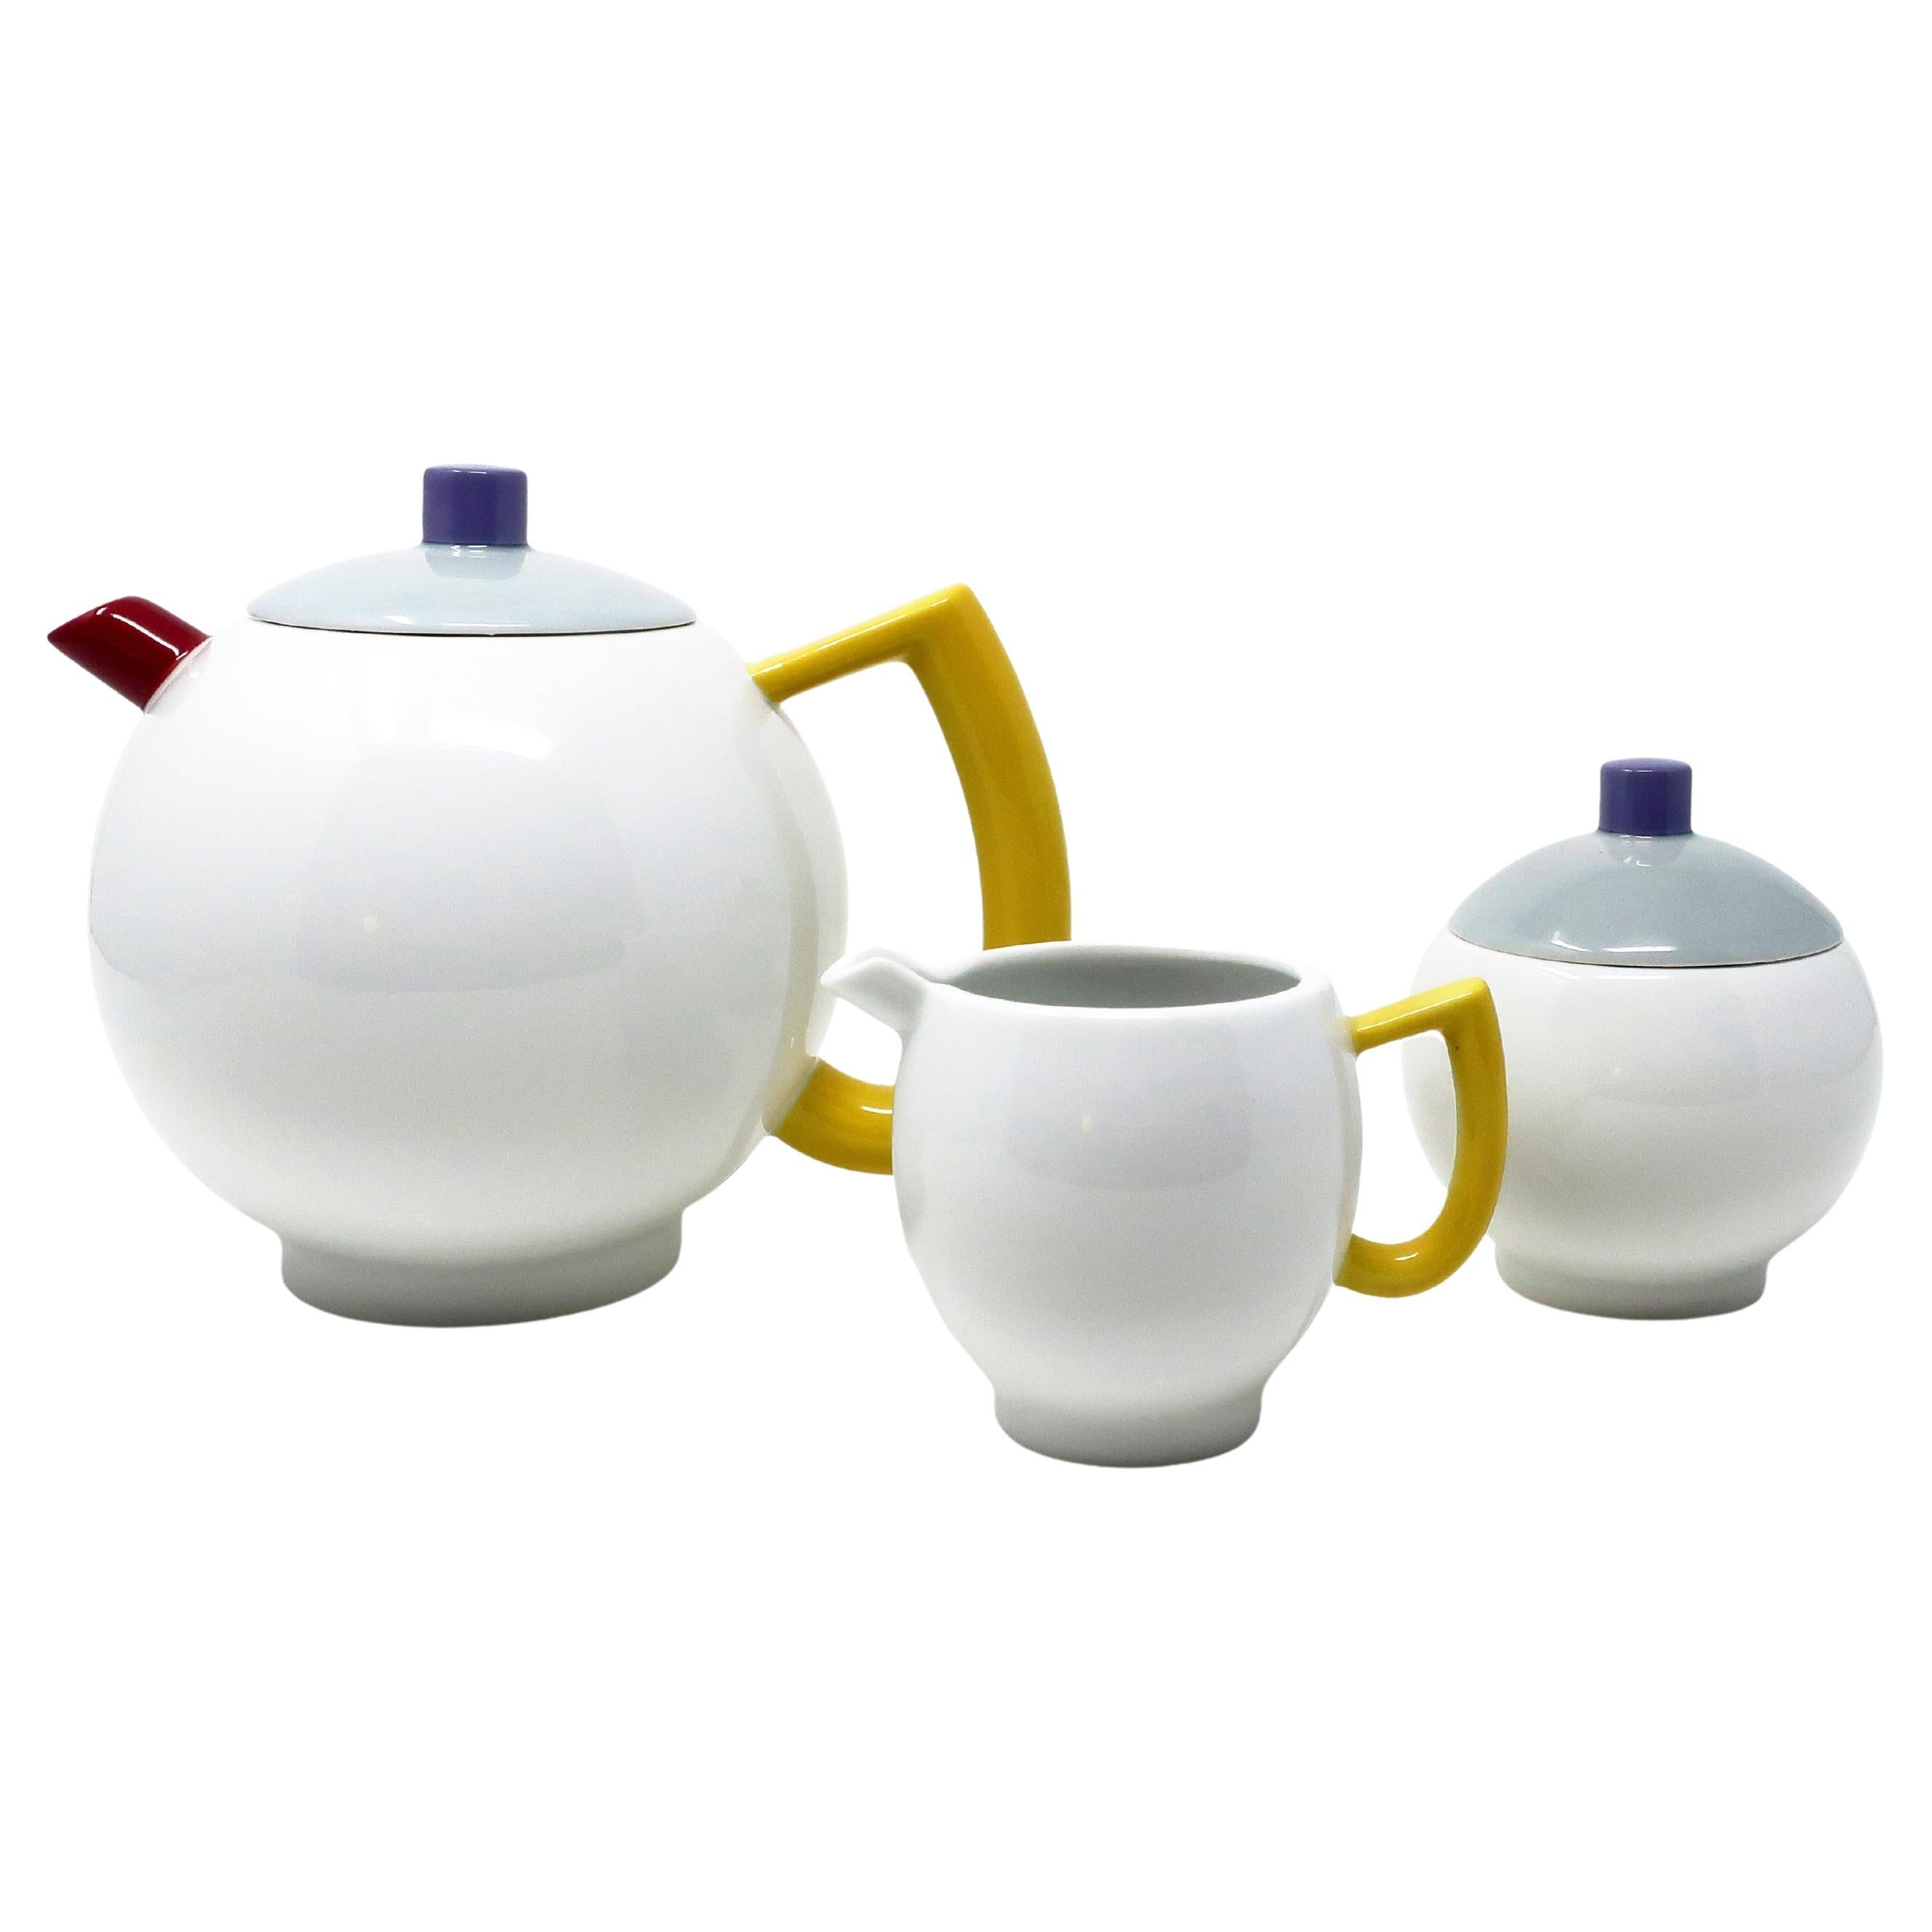 Vintage Porcelain Tea Set - 6 For Sale on 1stDibs